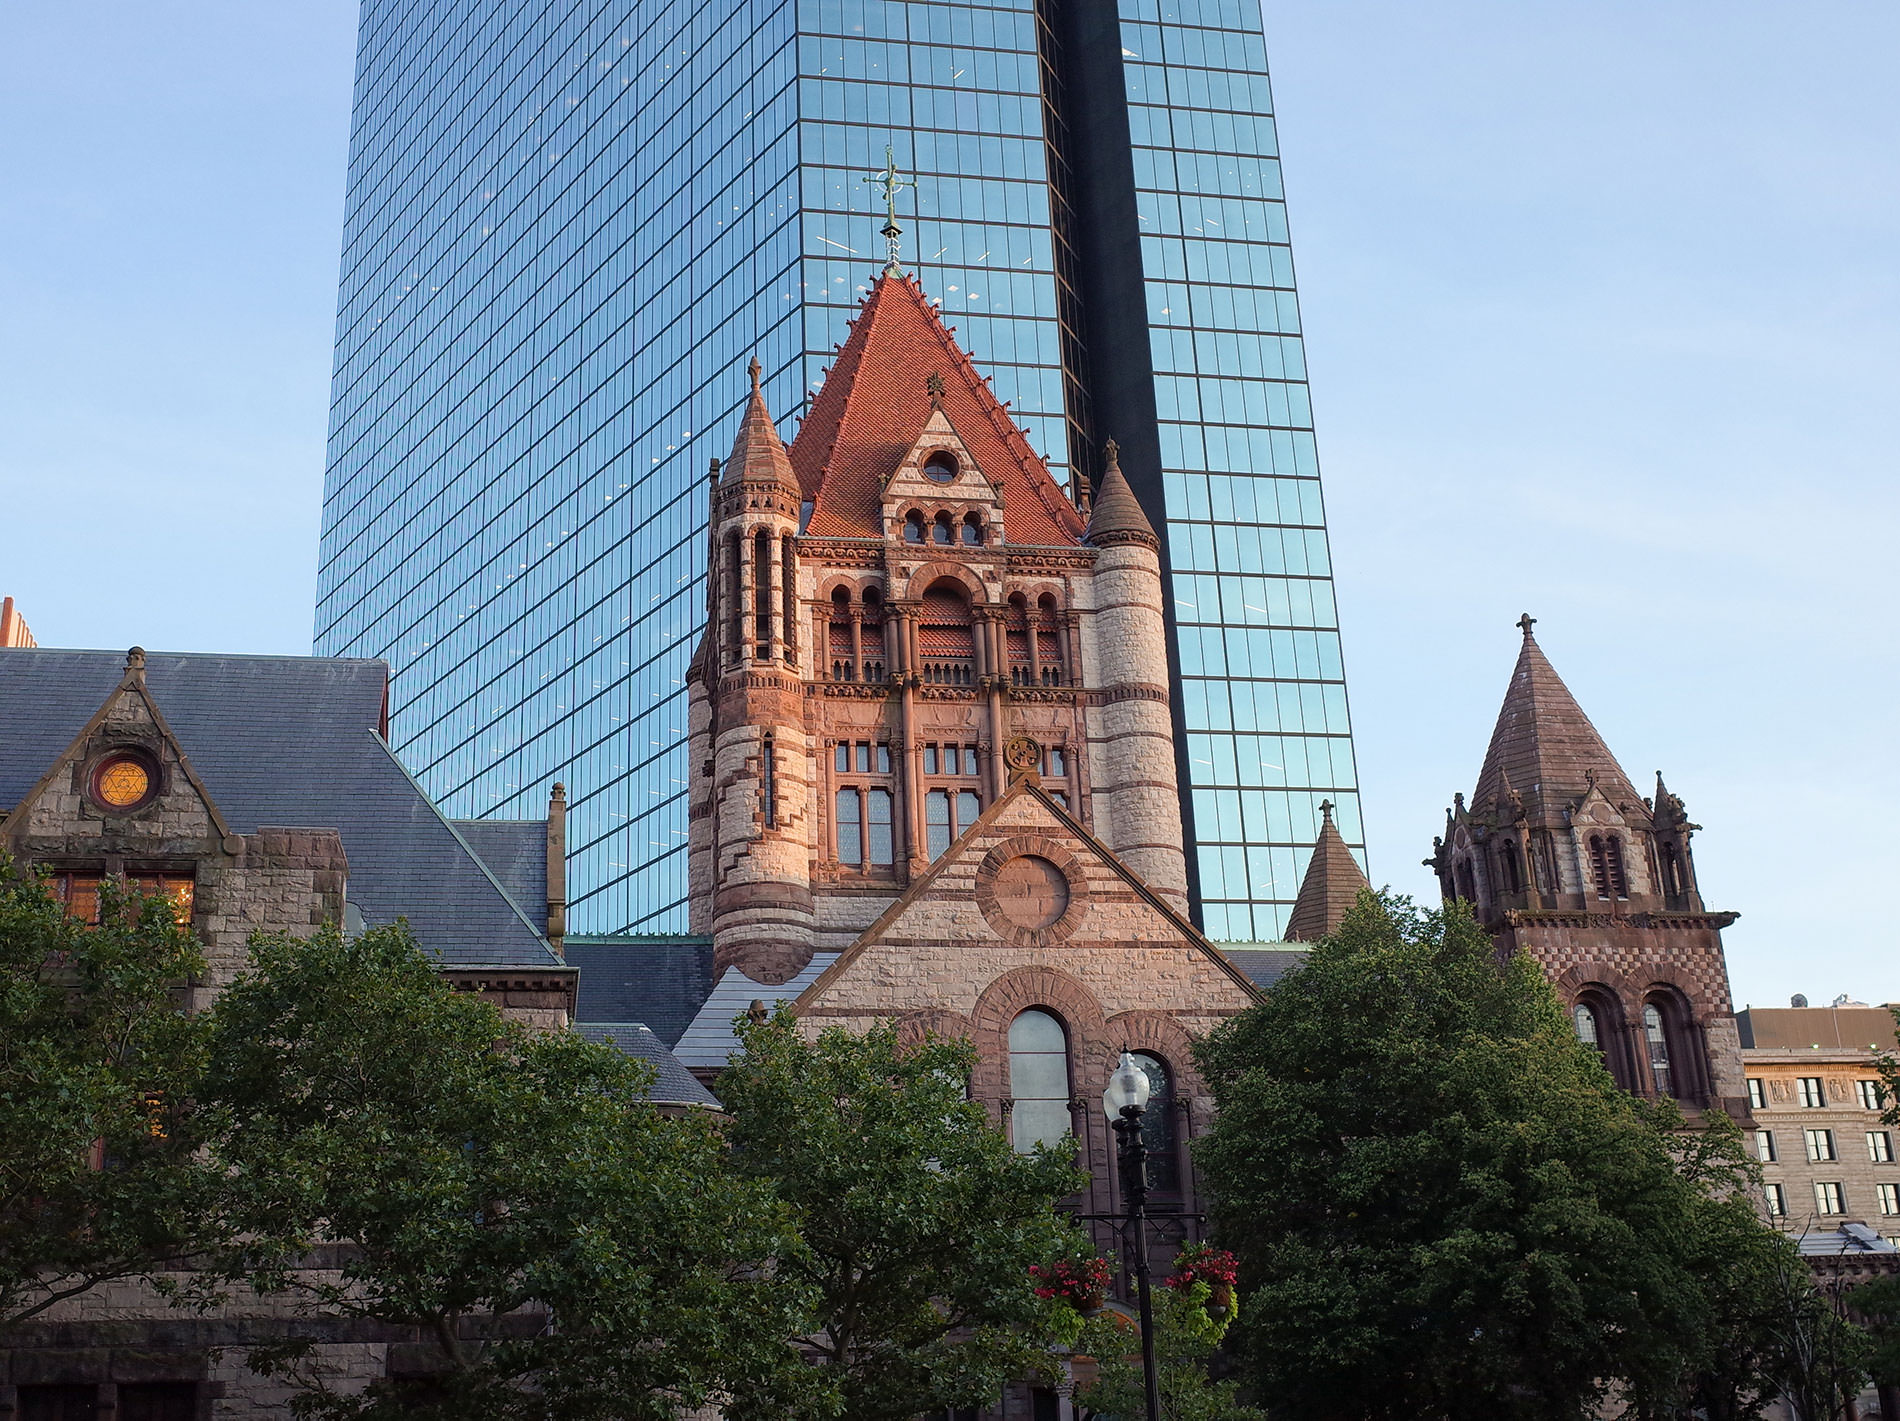 ボストン市街散策 / ニューヨーク・ボストン旅行 2019 // Boston City Stroll / New York-Boston Travel 2019